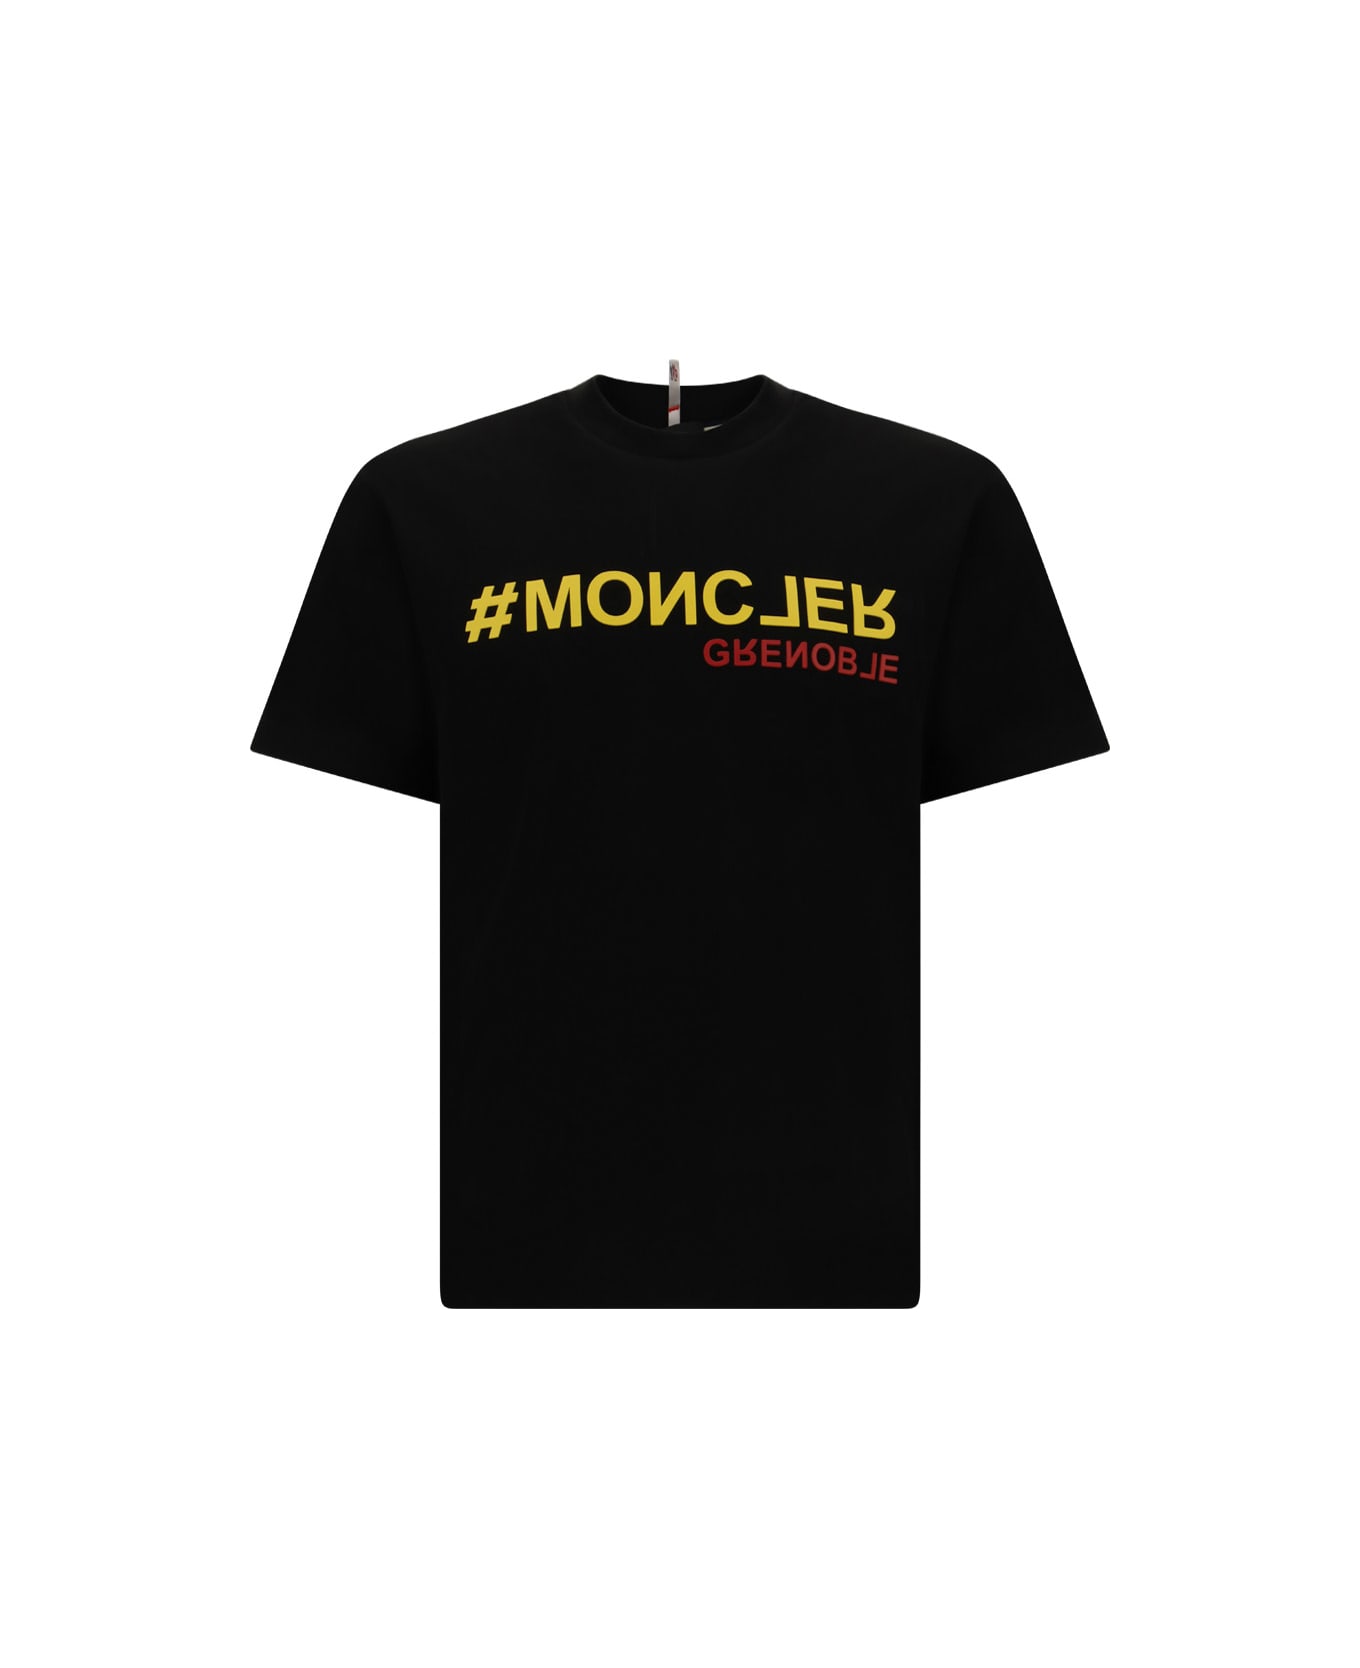 Moncler Grenoble T-shirt - Black